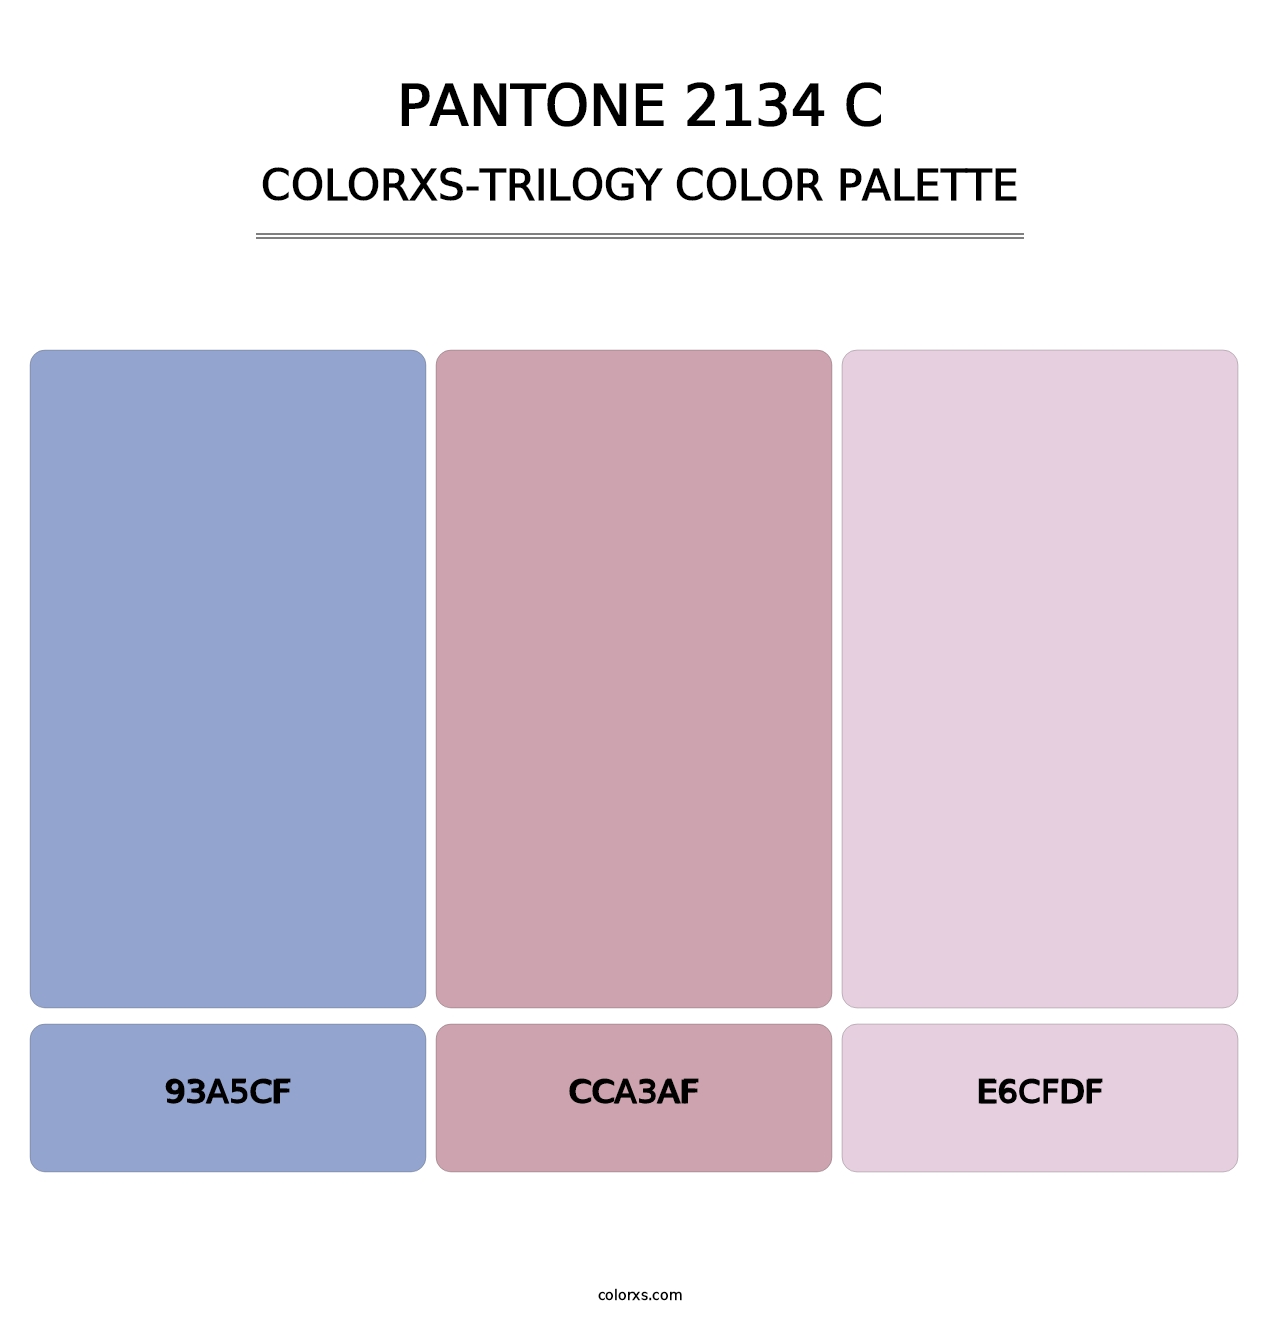 PANTONE 2134 C - Colorxs Trilogy Palette